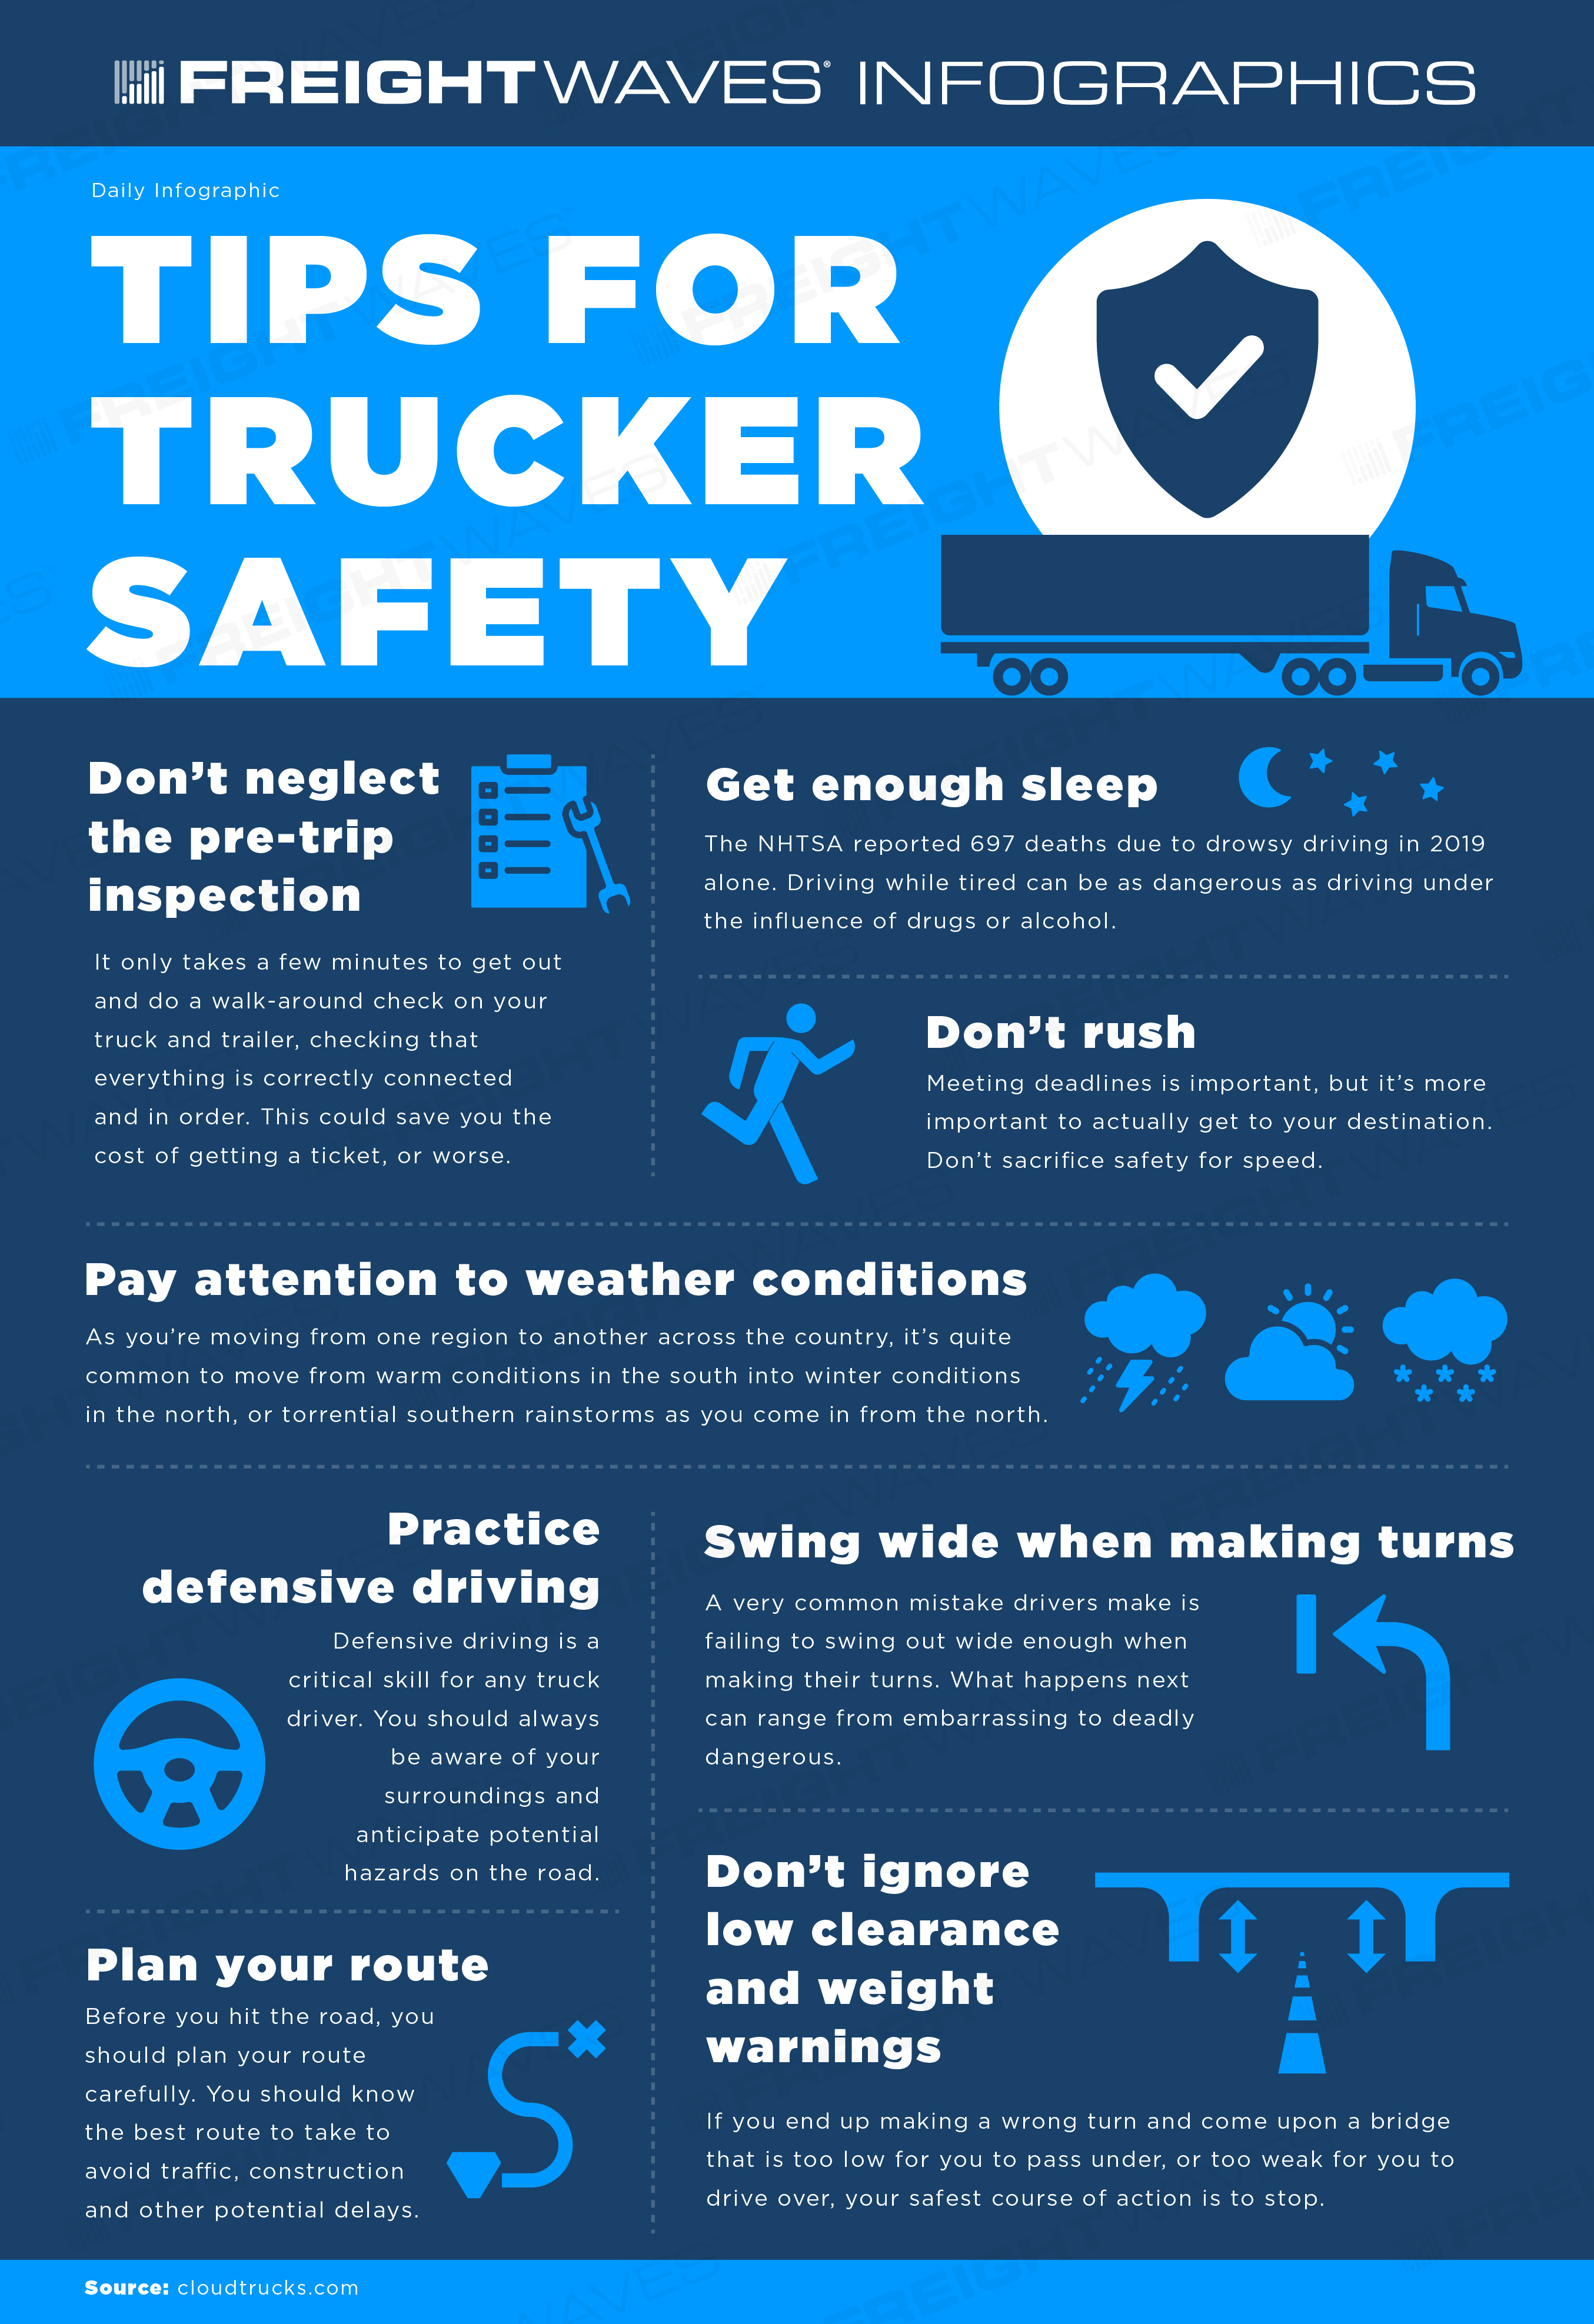 https://www.freightwaves.com/wp-content/uploads/2023/03/27/Tips-for-trucker-safety_03-29-23_full-ignore.jpg